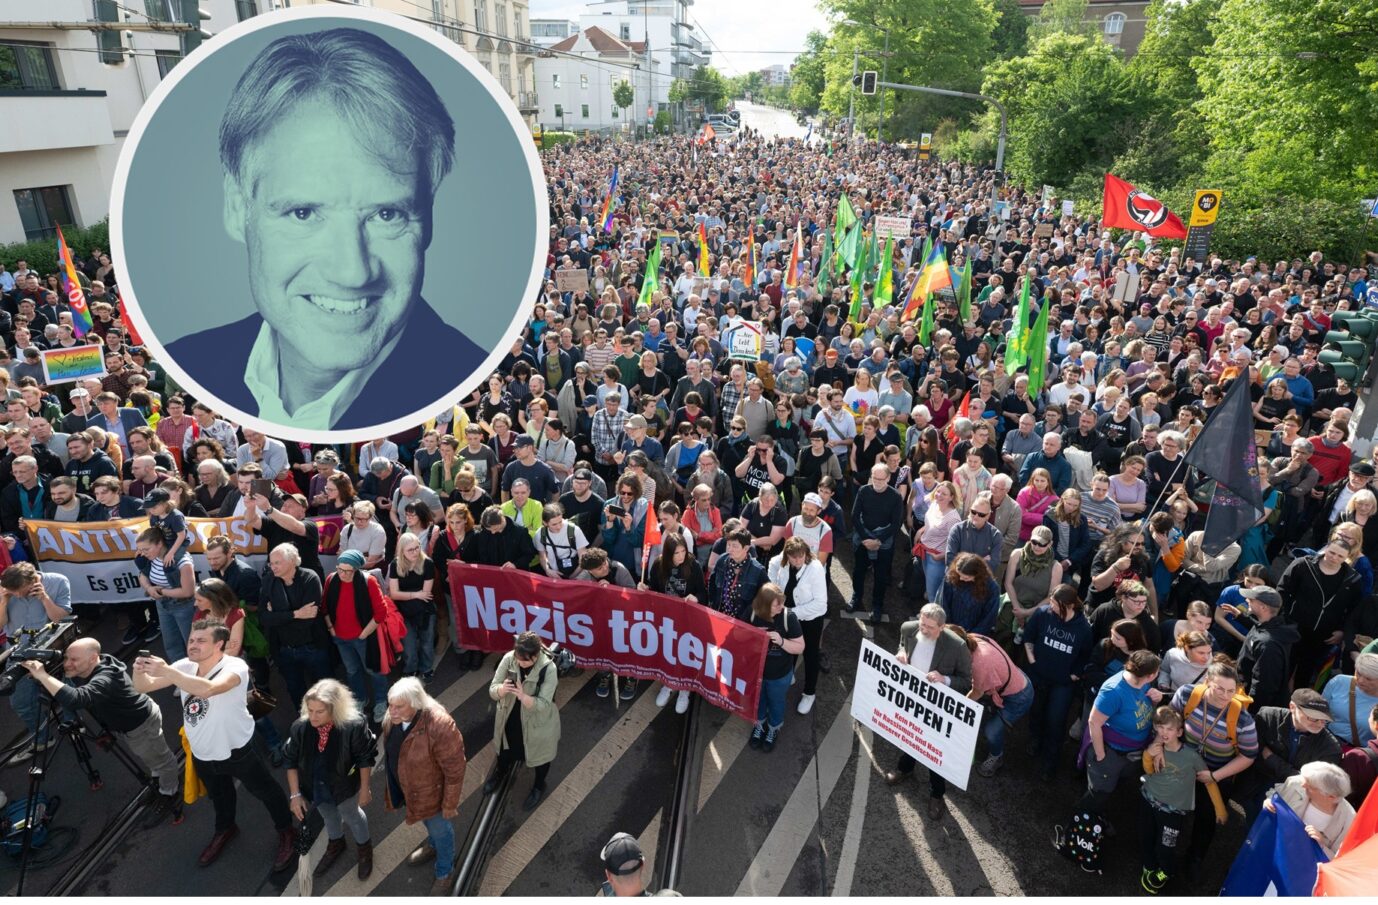 3000 Menschen demonstrieren unter Antifa-, SPD-, Grünen und Linken-Fahnen sowie dem Plakat „Nazis töten“ gegen politische Gewalt.